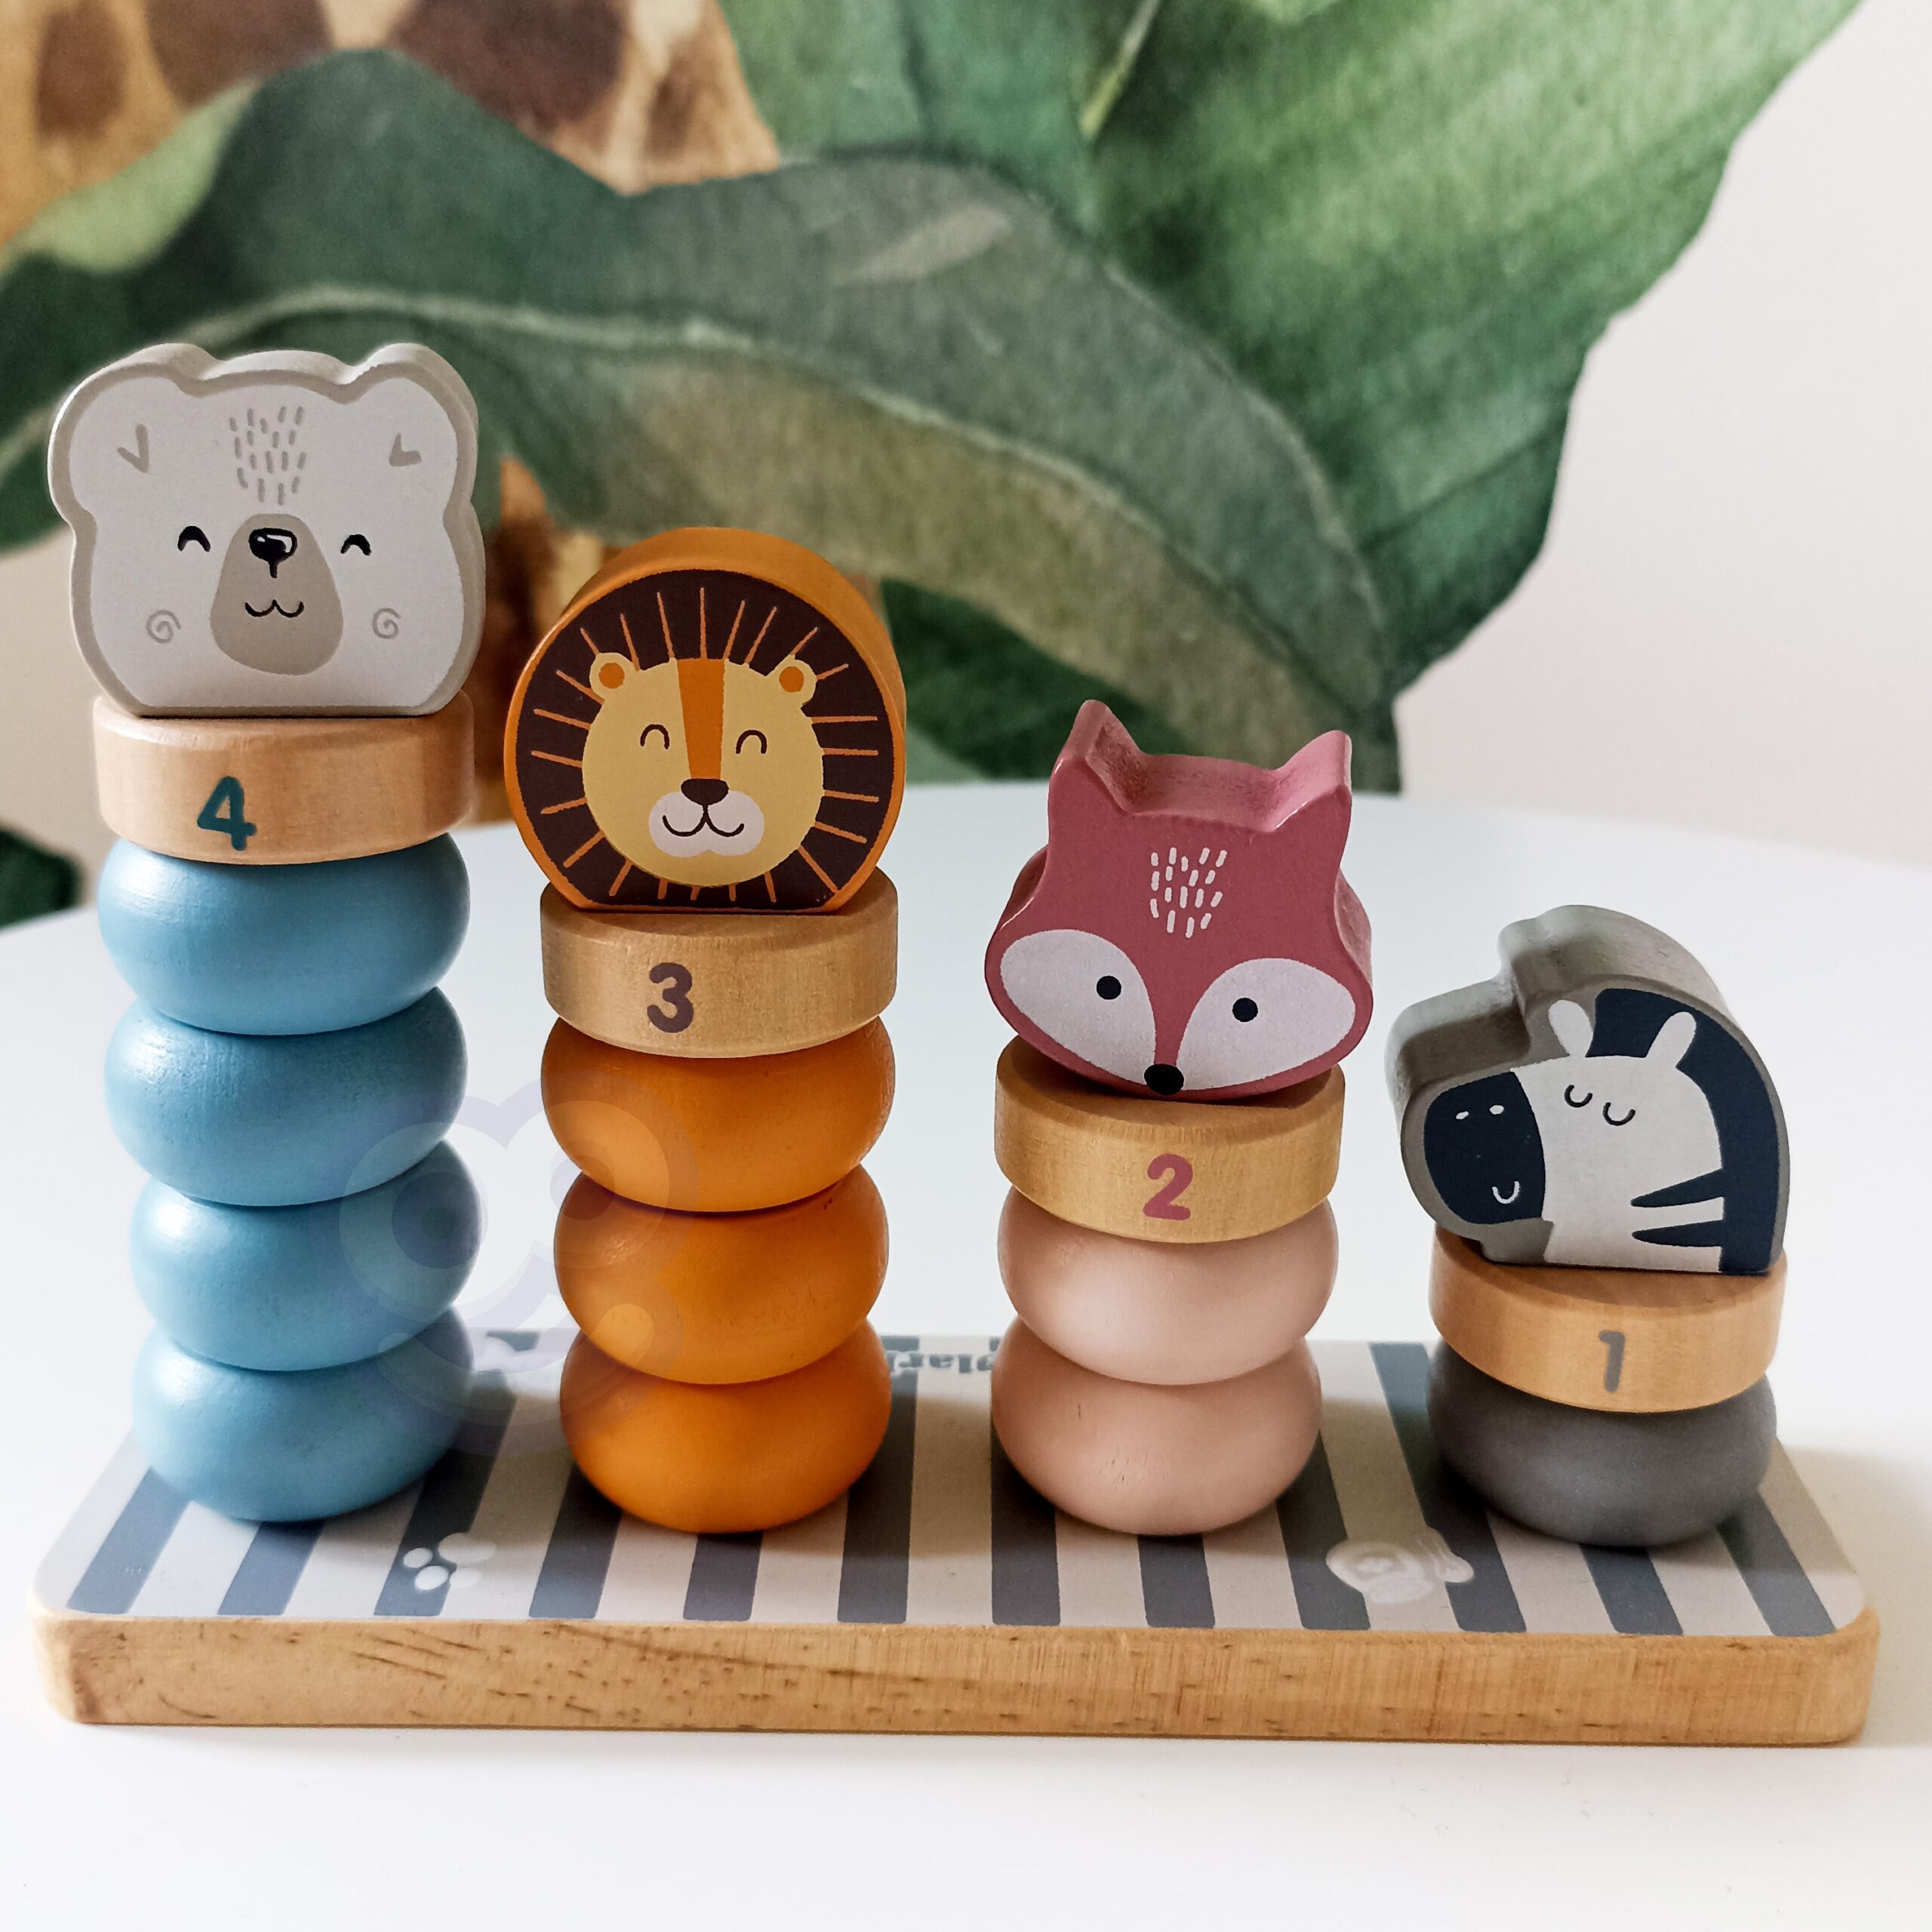 Drewniana układanka edukacyjna ze zwierzątkami Viga PolarB, zabawka dla dzieci